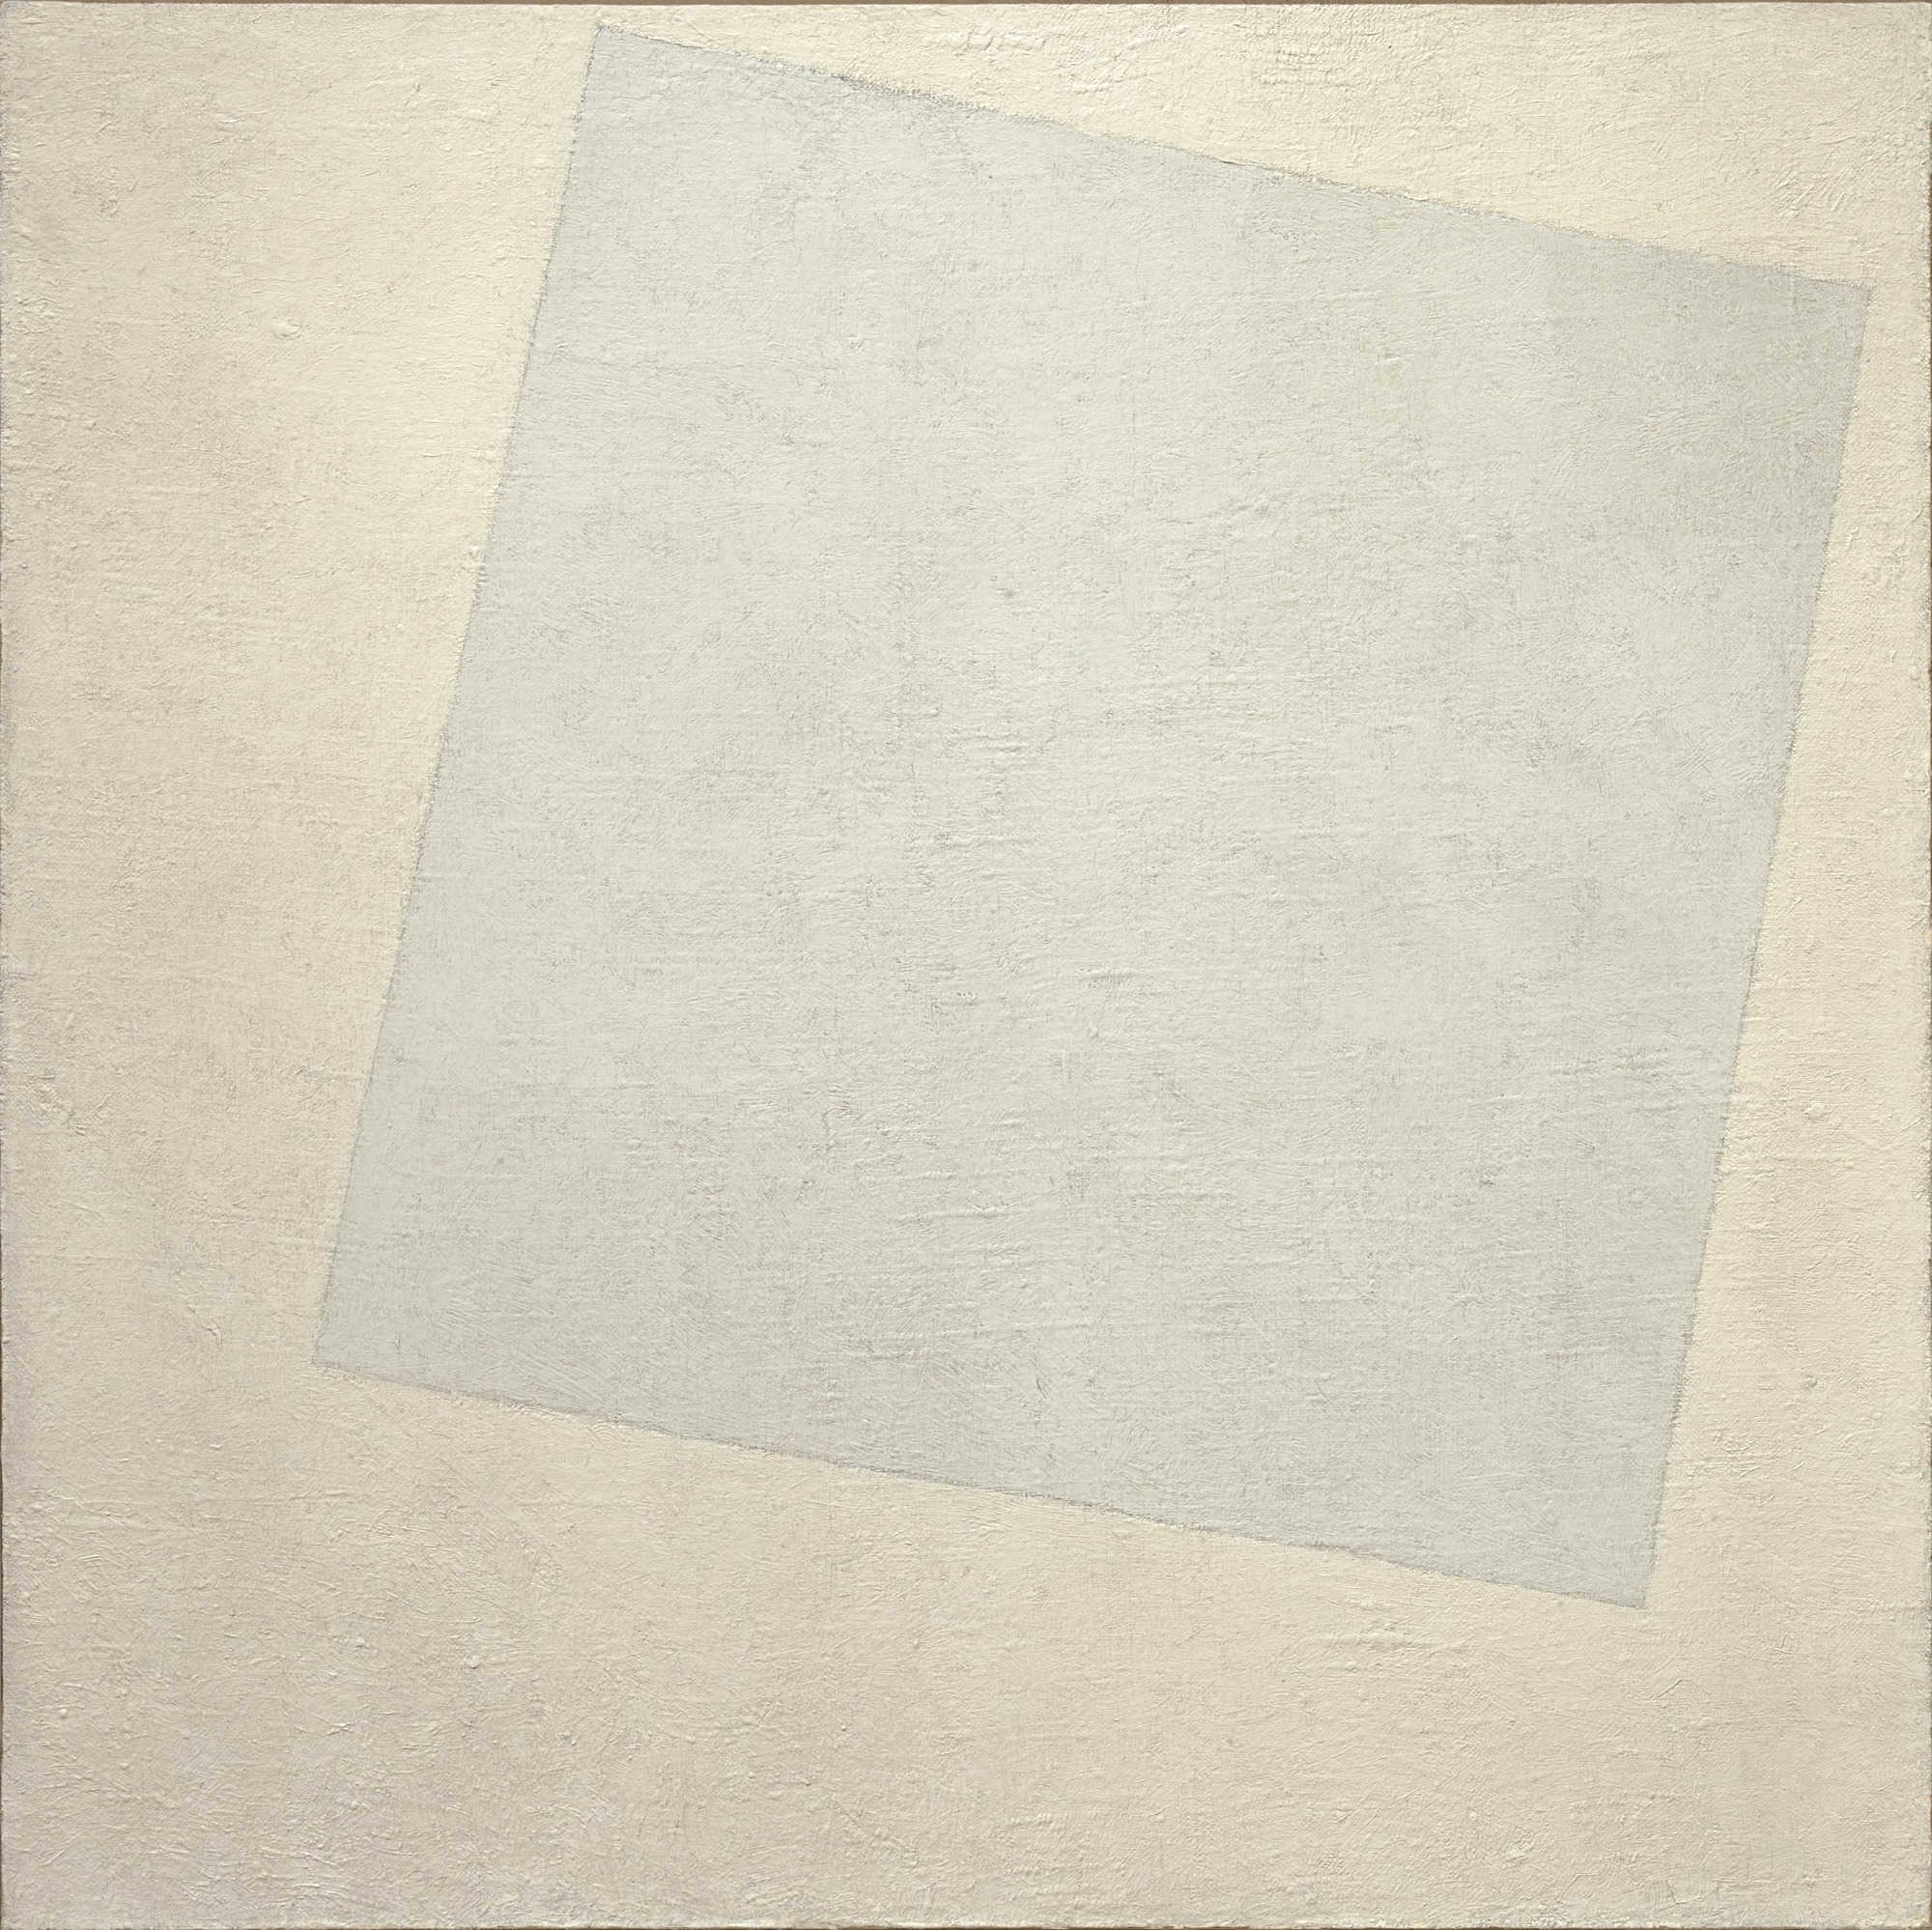 Kazimir_Malevich, Composition suprématiste : Blanc sur blanc (1918)